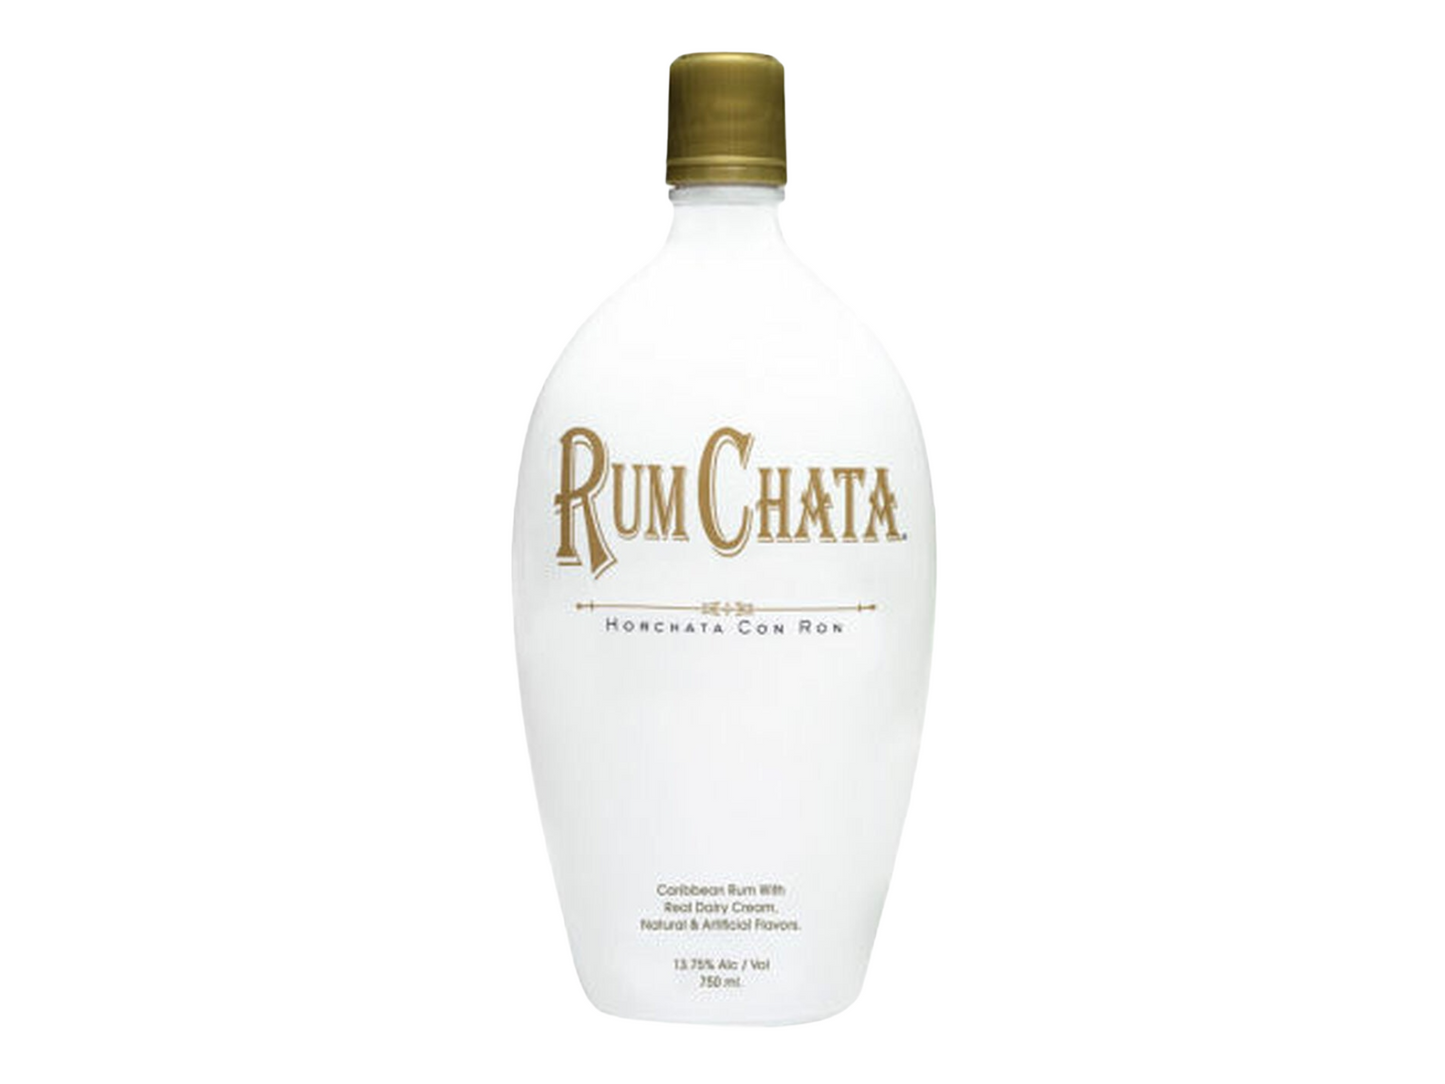 RumChata Horchata con Ron Cream Liqueur 750ml